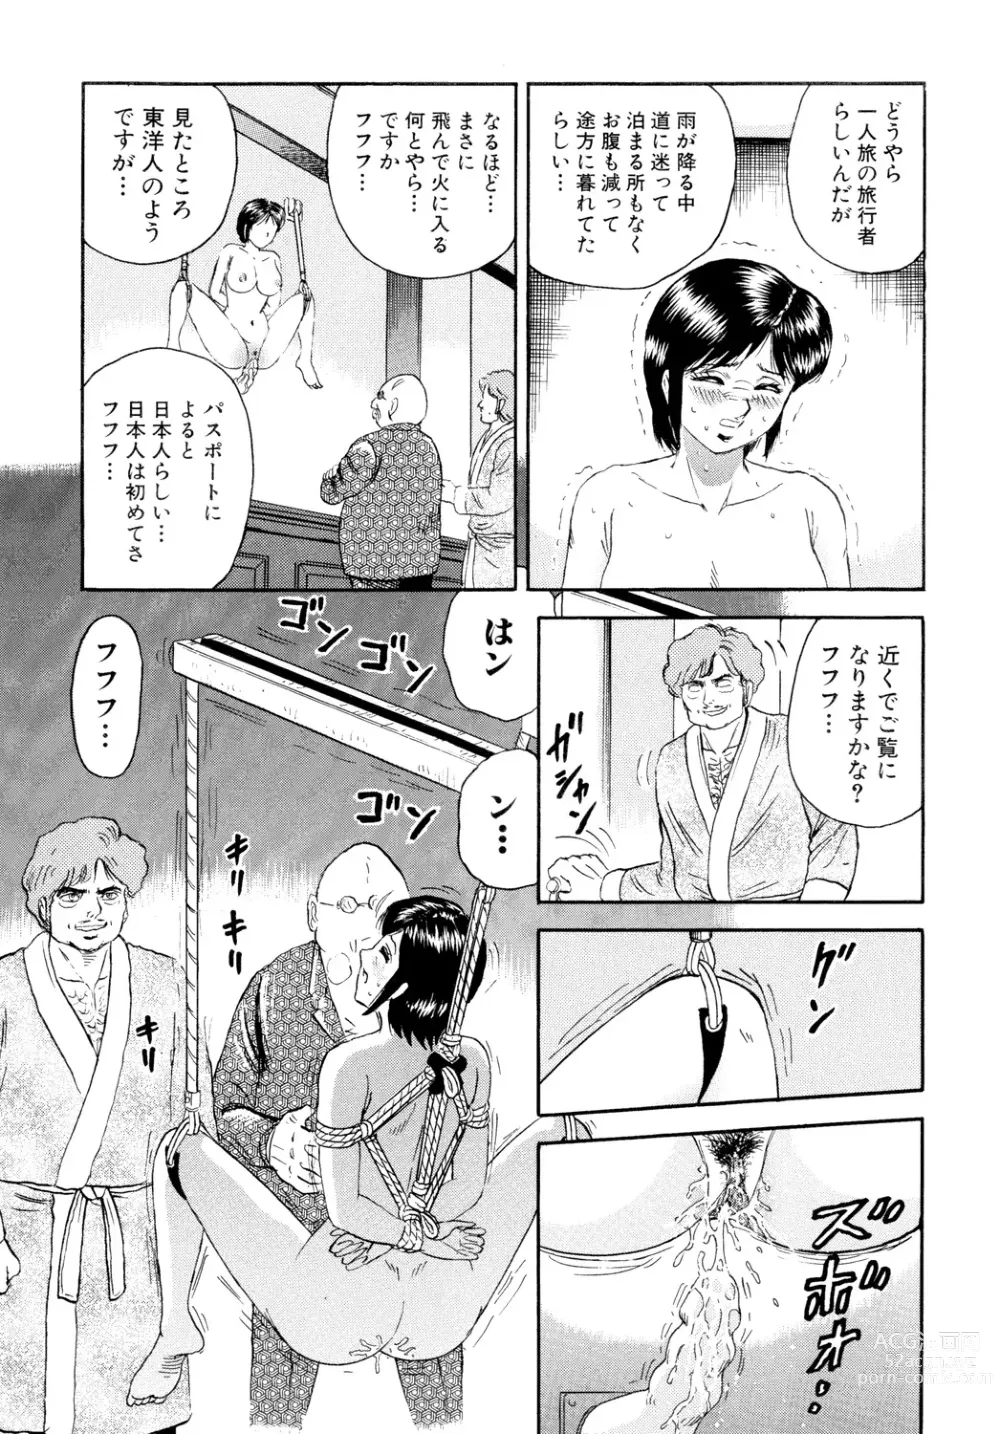 Page 149 of manga Nikuyoku no Utage